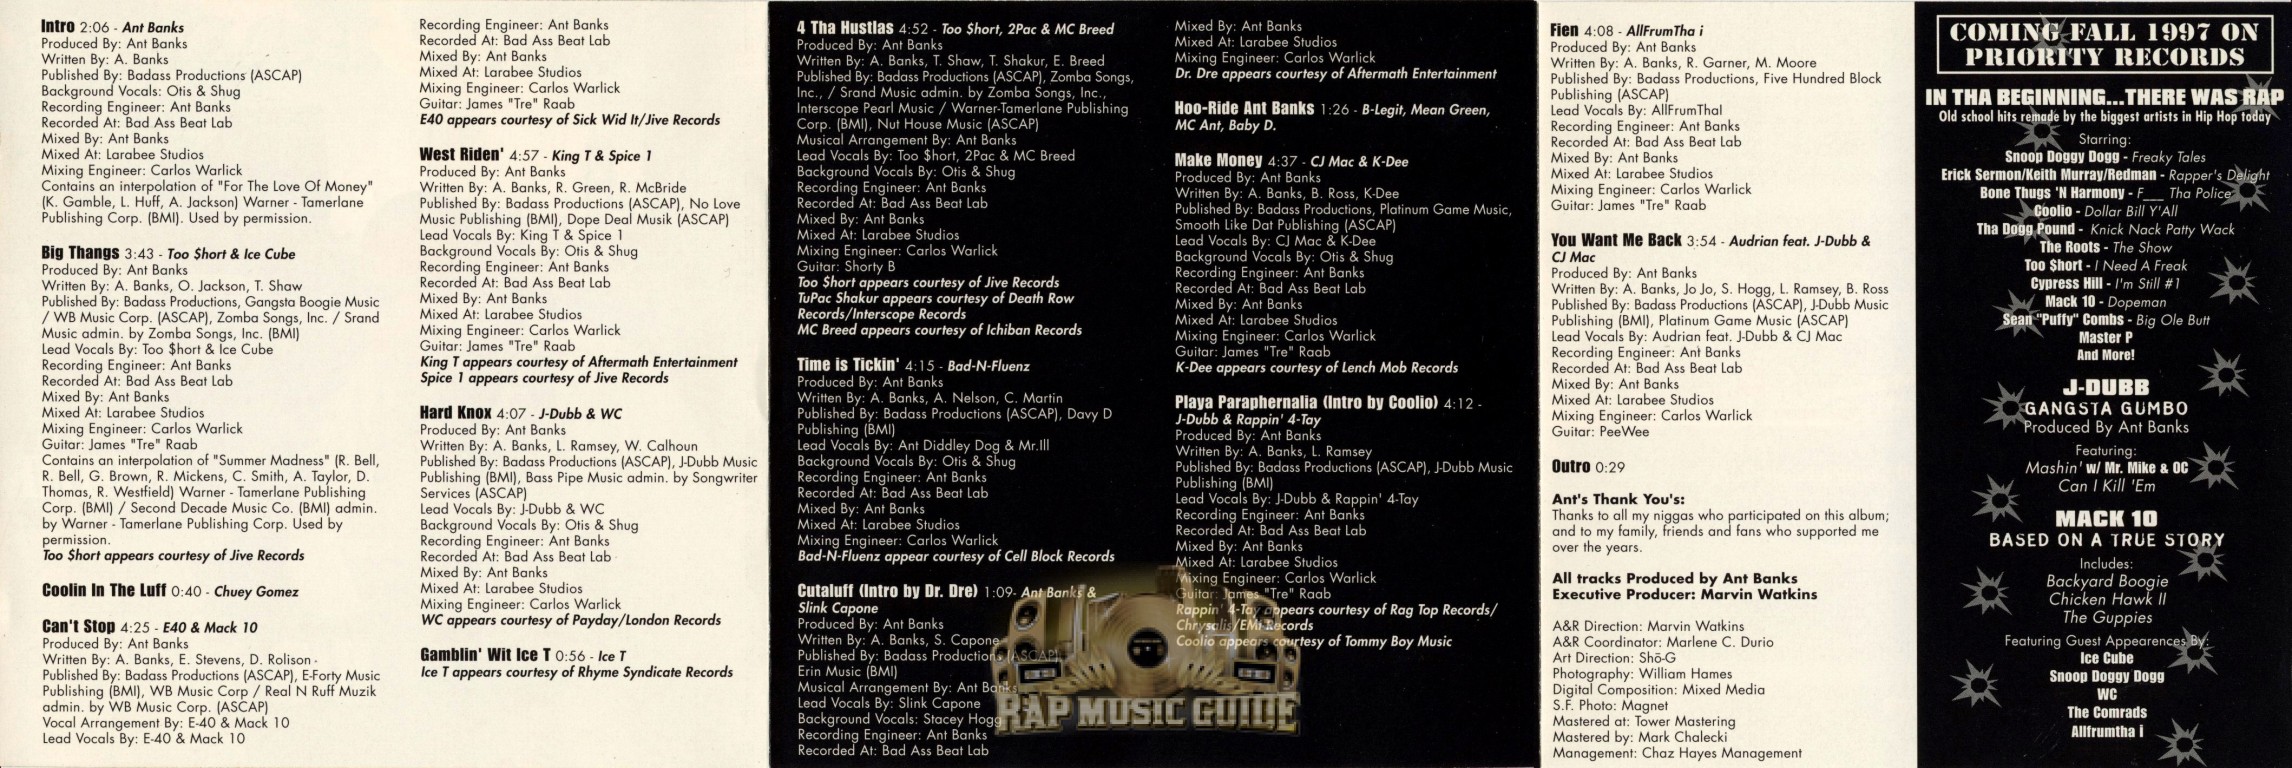 Ant Banks - Big Thangs: CD | Rap Music Guide